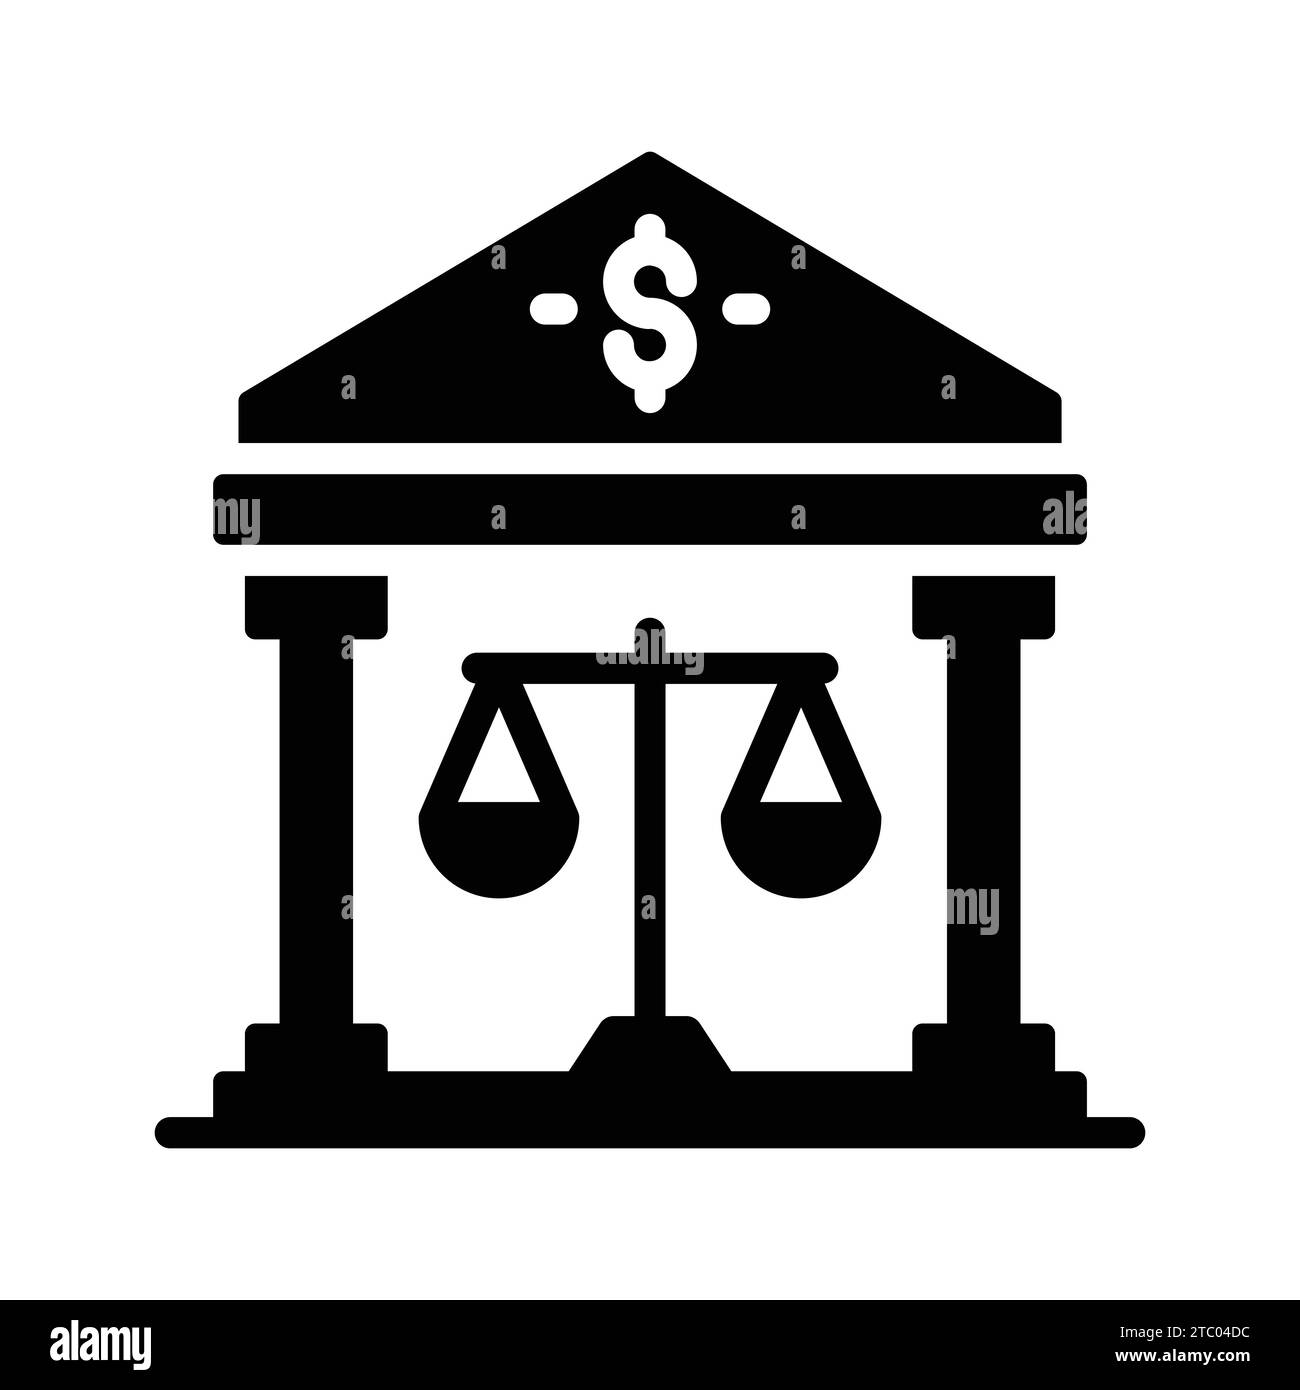 Saldenskala mit Bankgebäude mit Symbol für das Konzept des Bankrechts. Stock Vektor